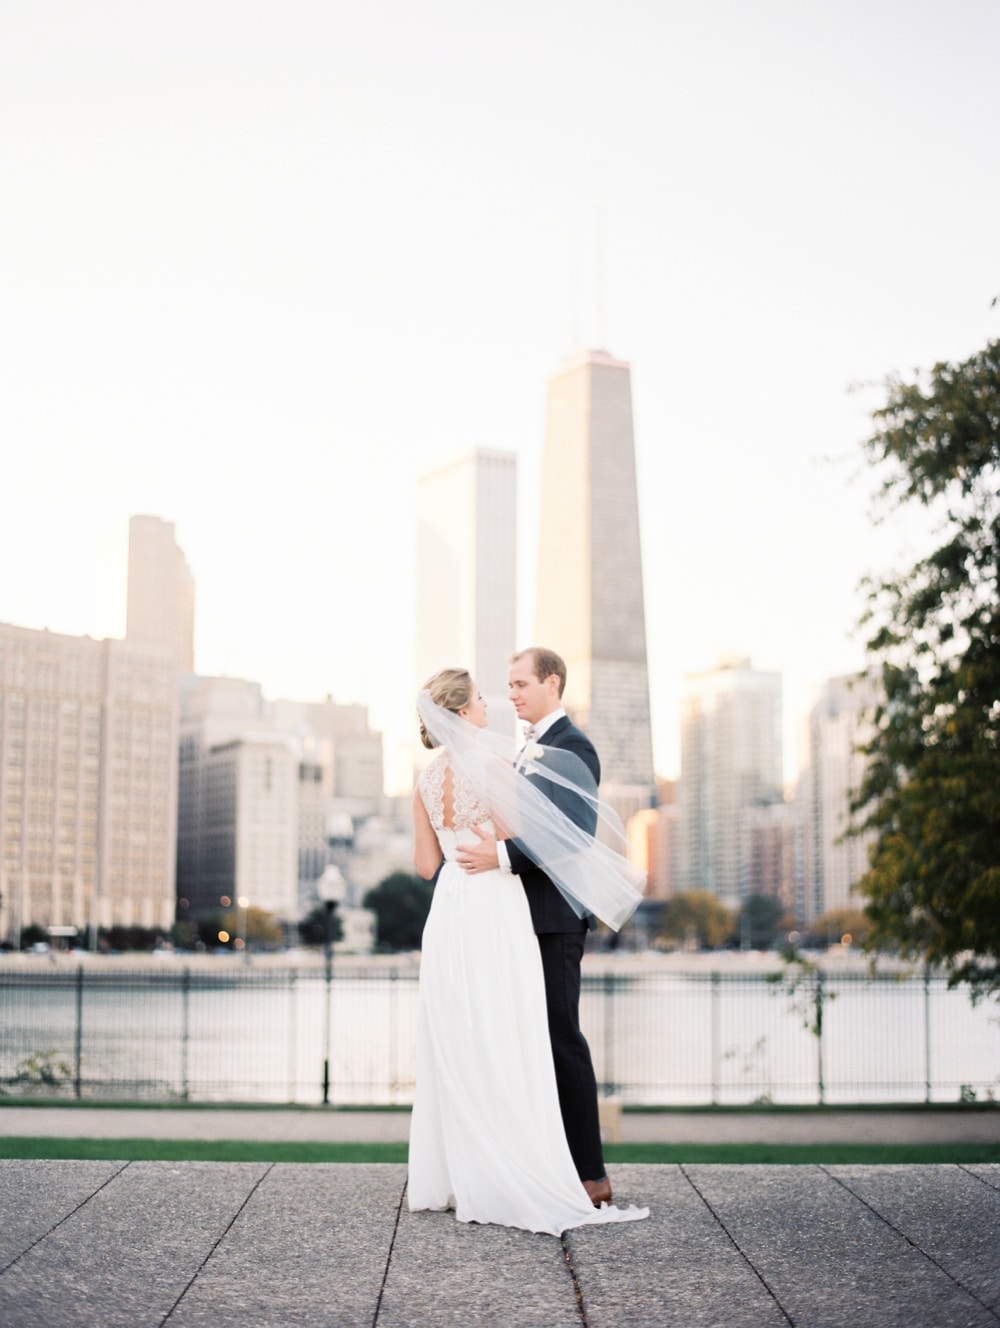 kristin-la-voie-photography-bridgeport-art-center-wedding-chicago-wedding-photographer-119